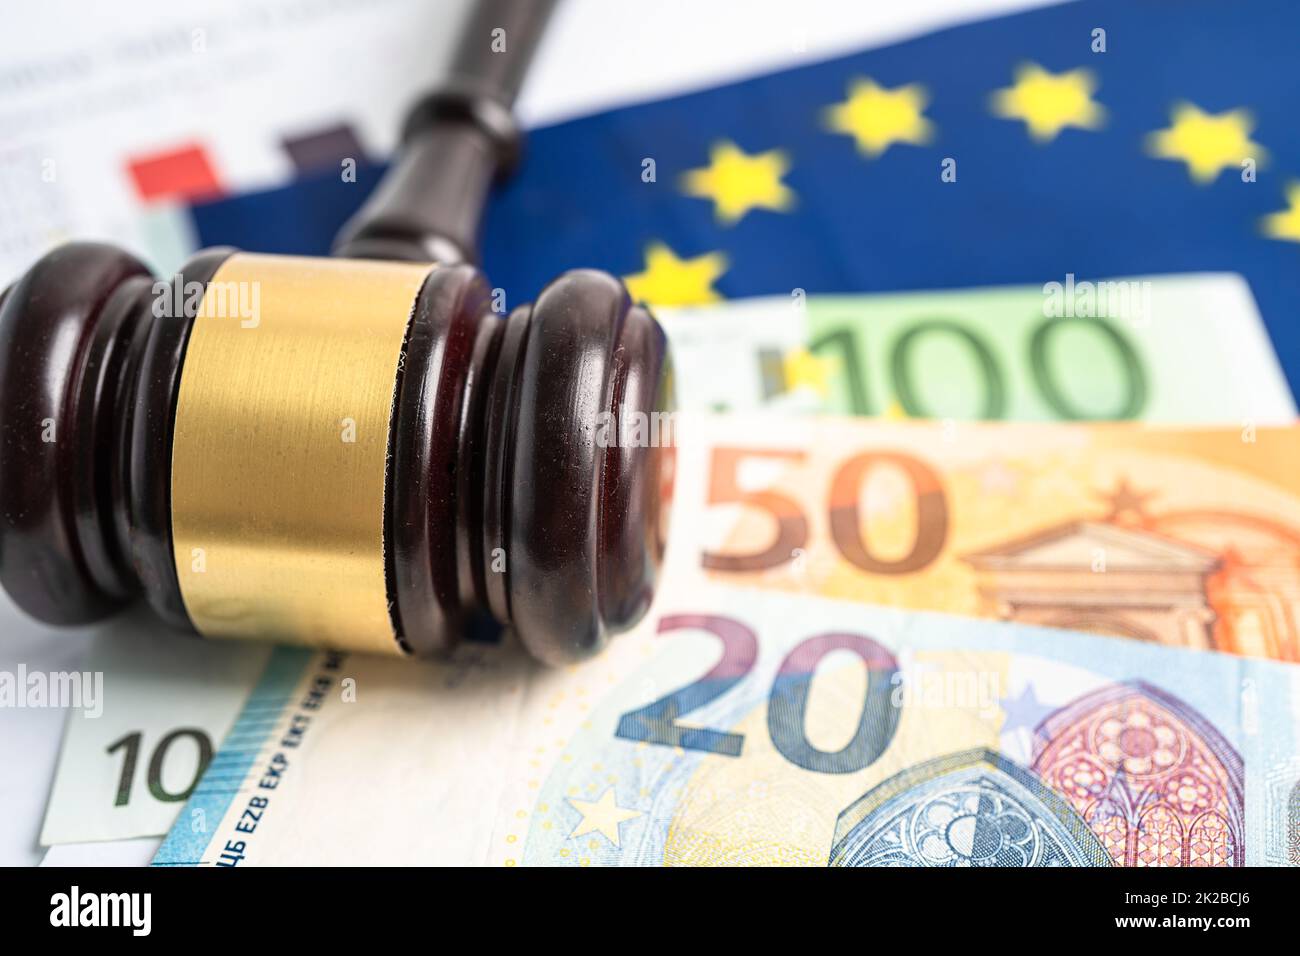 Drapeau de l'UE avec gavage et billet d'euro pour juge avocat.Droit et justice concept de tribunal. Banque D'Images